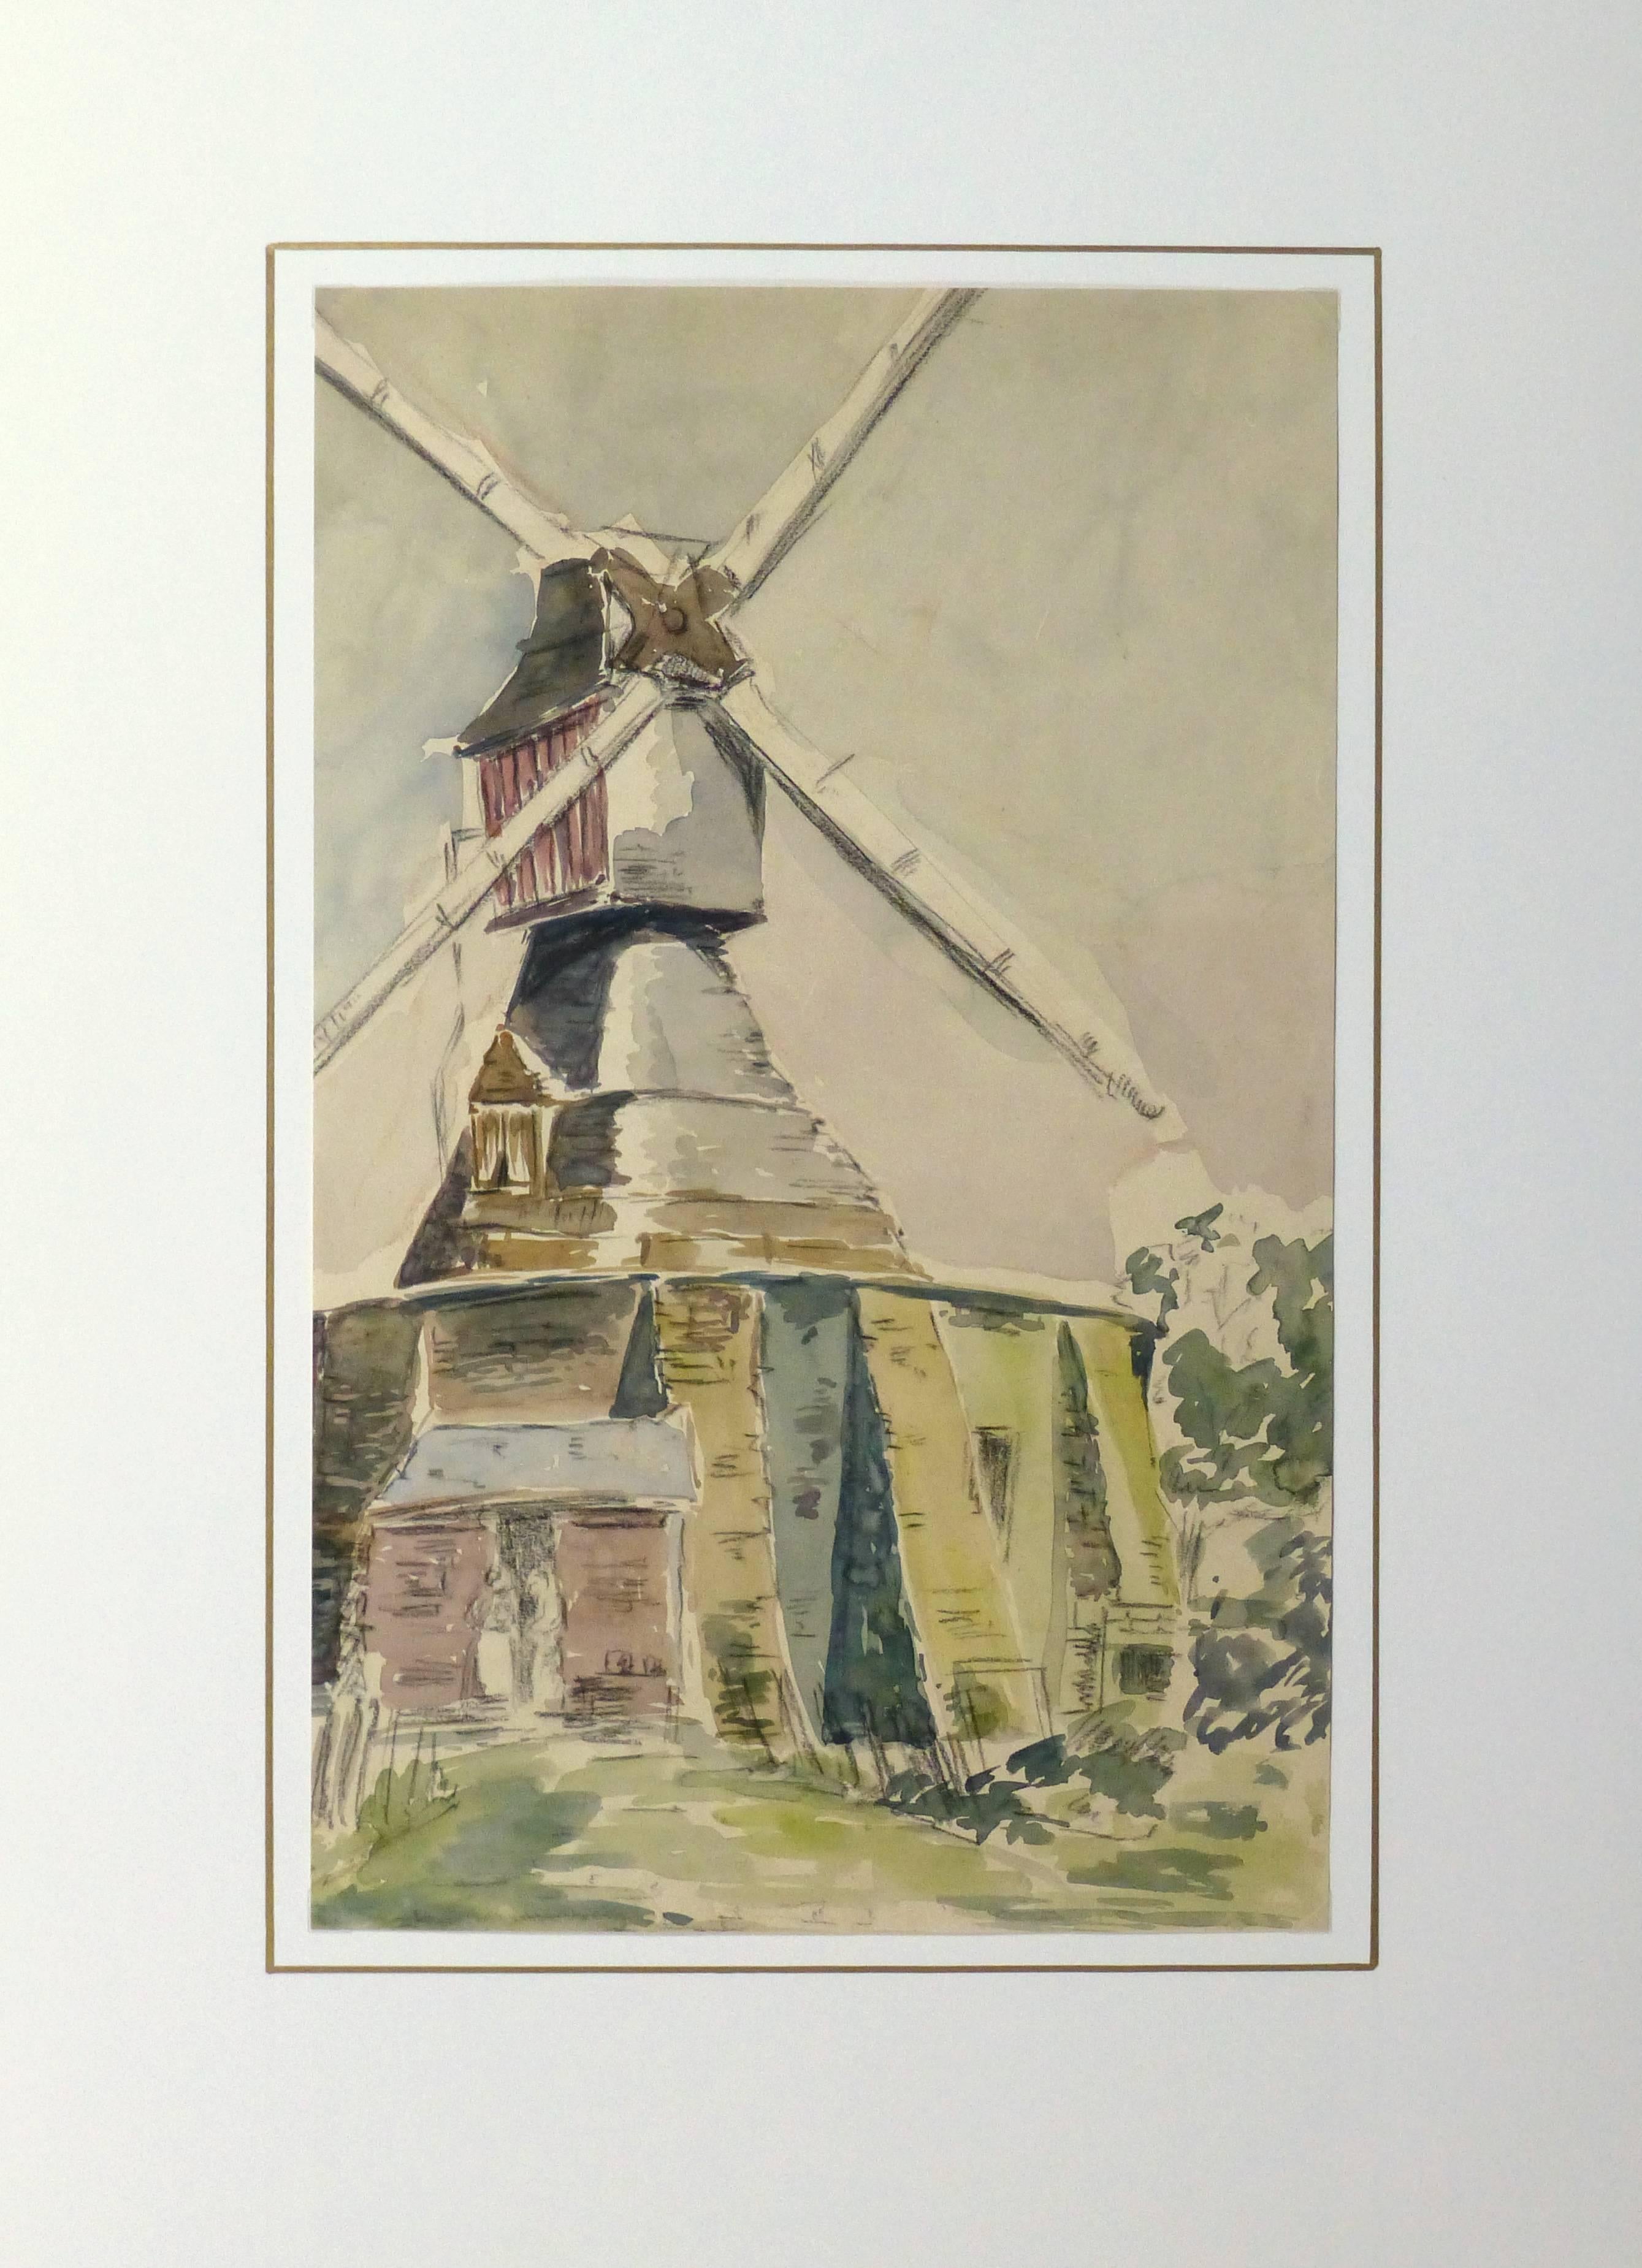 Malerisches französisches Aquarell einer Windmühle in ruhigen, kühlen Farbtönen, um 1920. 

Originalkunstwerk auf Papier auf einem weißen Passepartout mit Goldrand. Die Matte passt in einen Rahmen in Standardgröße. Inklusive Plastikhülle und